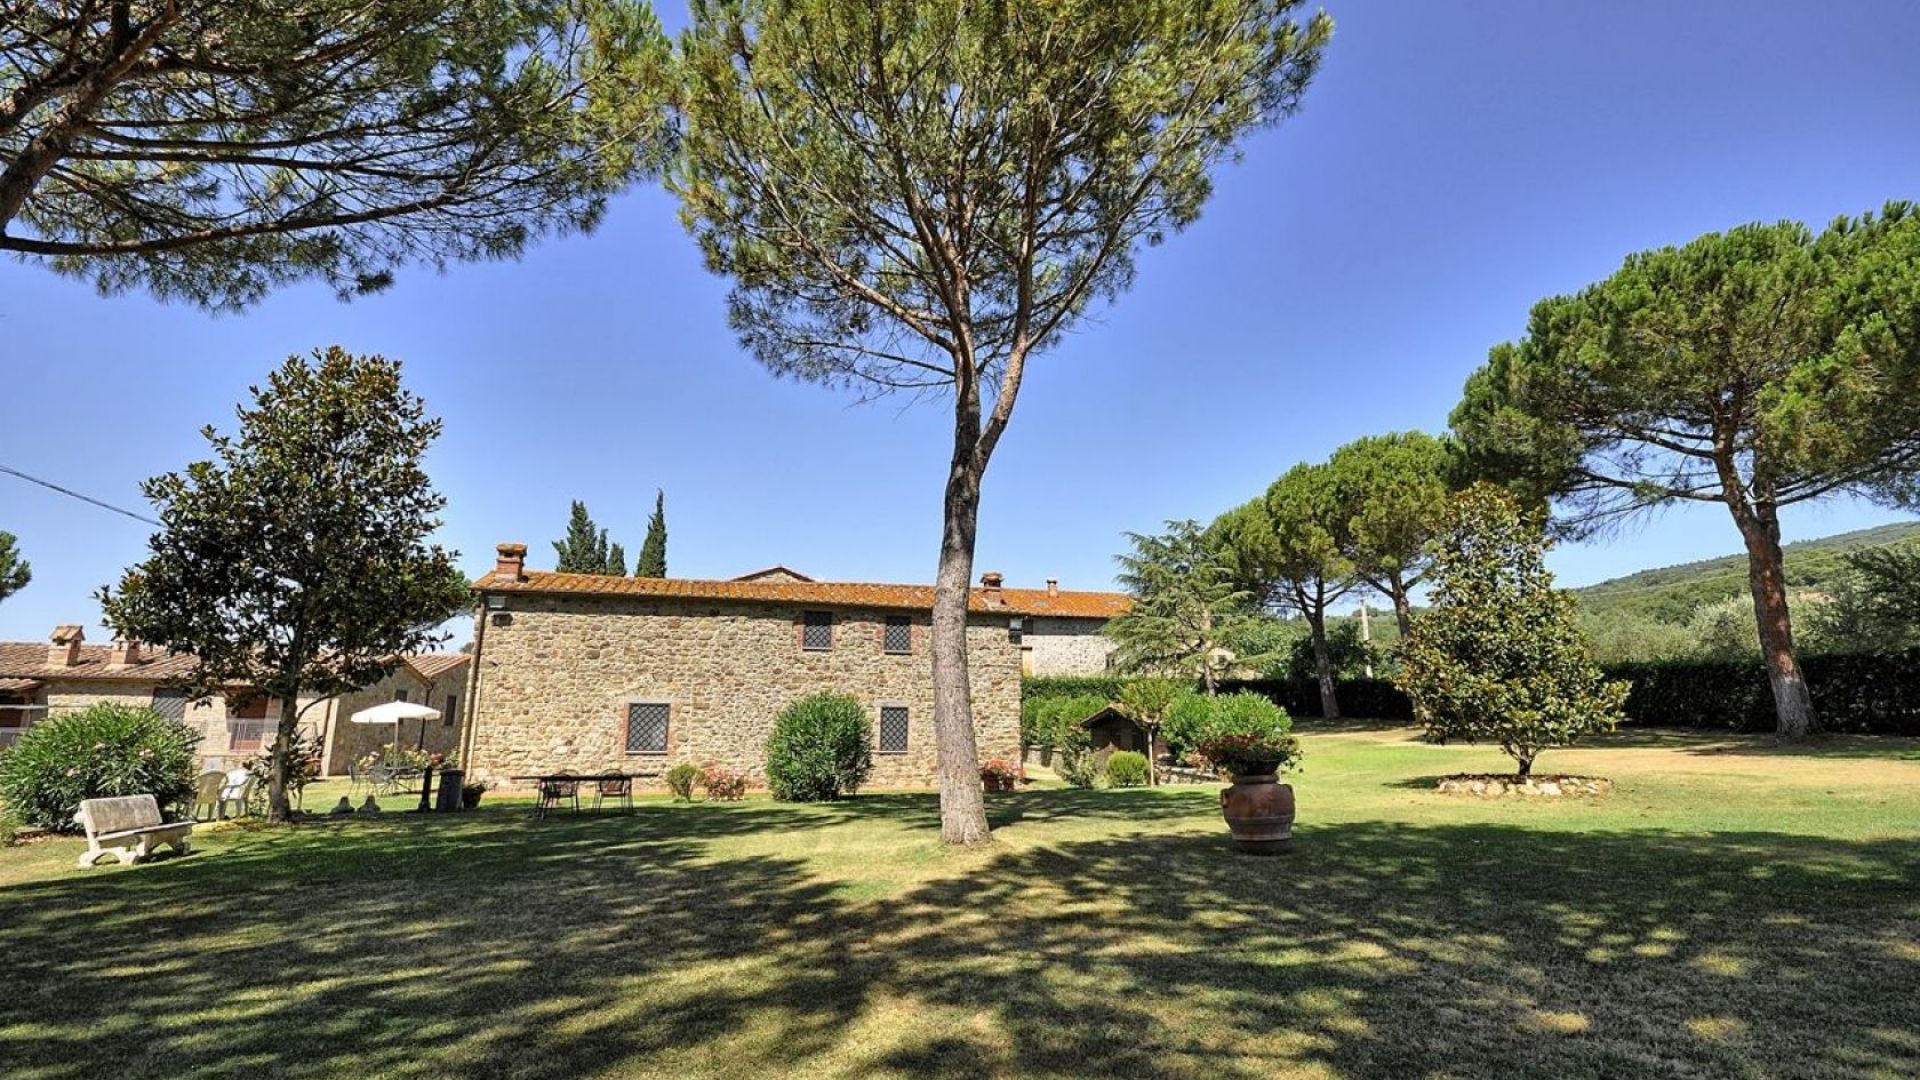 For sale villa in  Tuoro sul Trasimeno Umbria